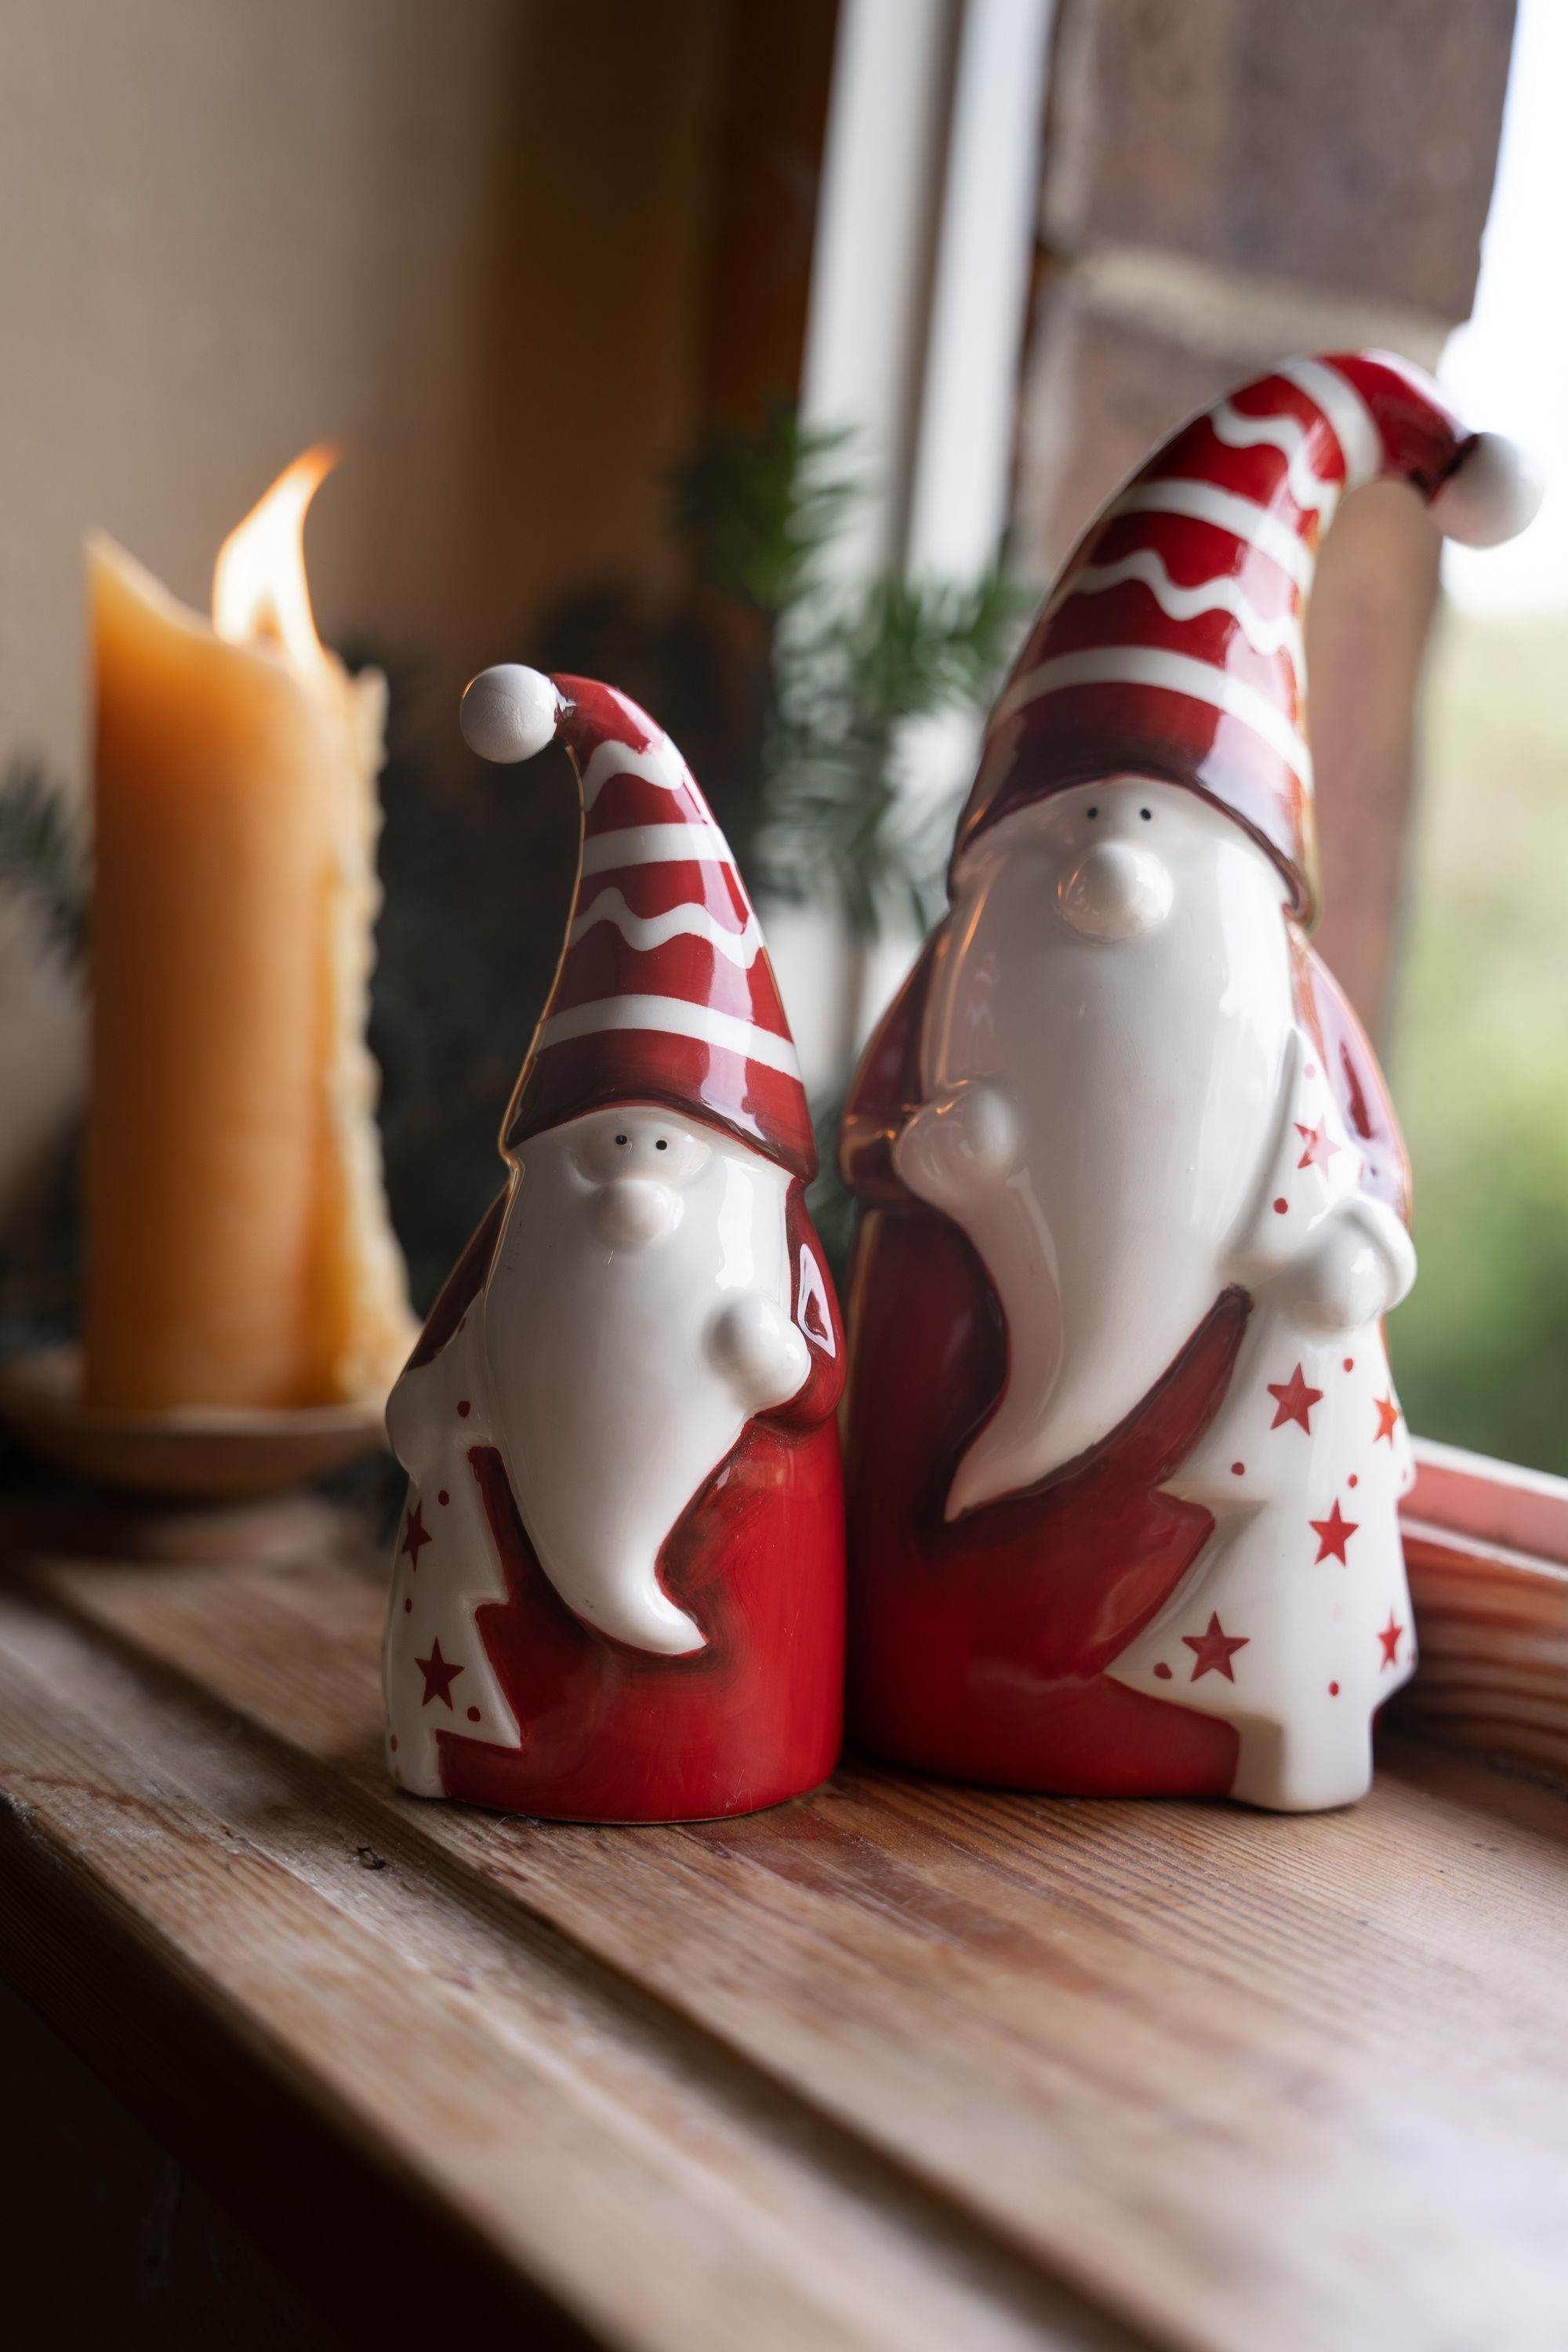 rot/weiß, DECO Weihnachtsfigur mit Heitmann 2x Nikolaus Tannenbaum, Keramik, aus